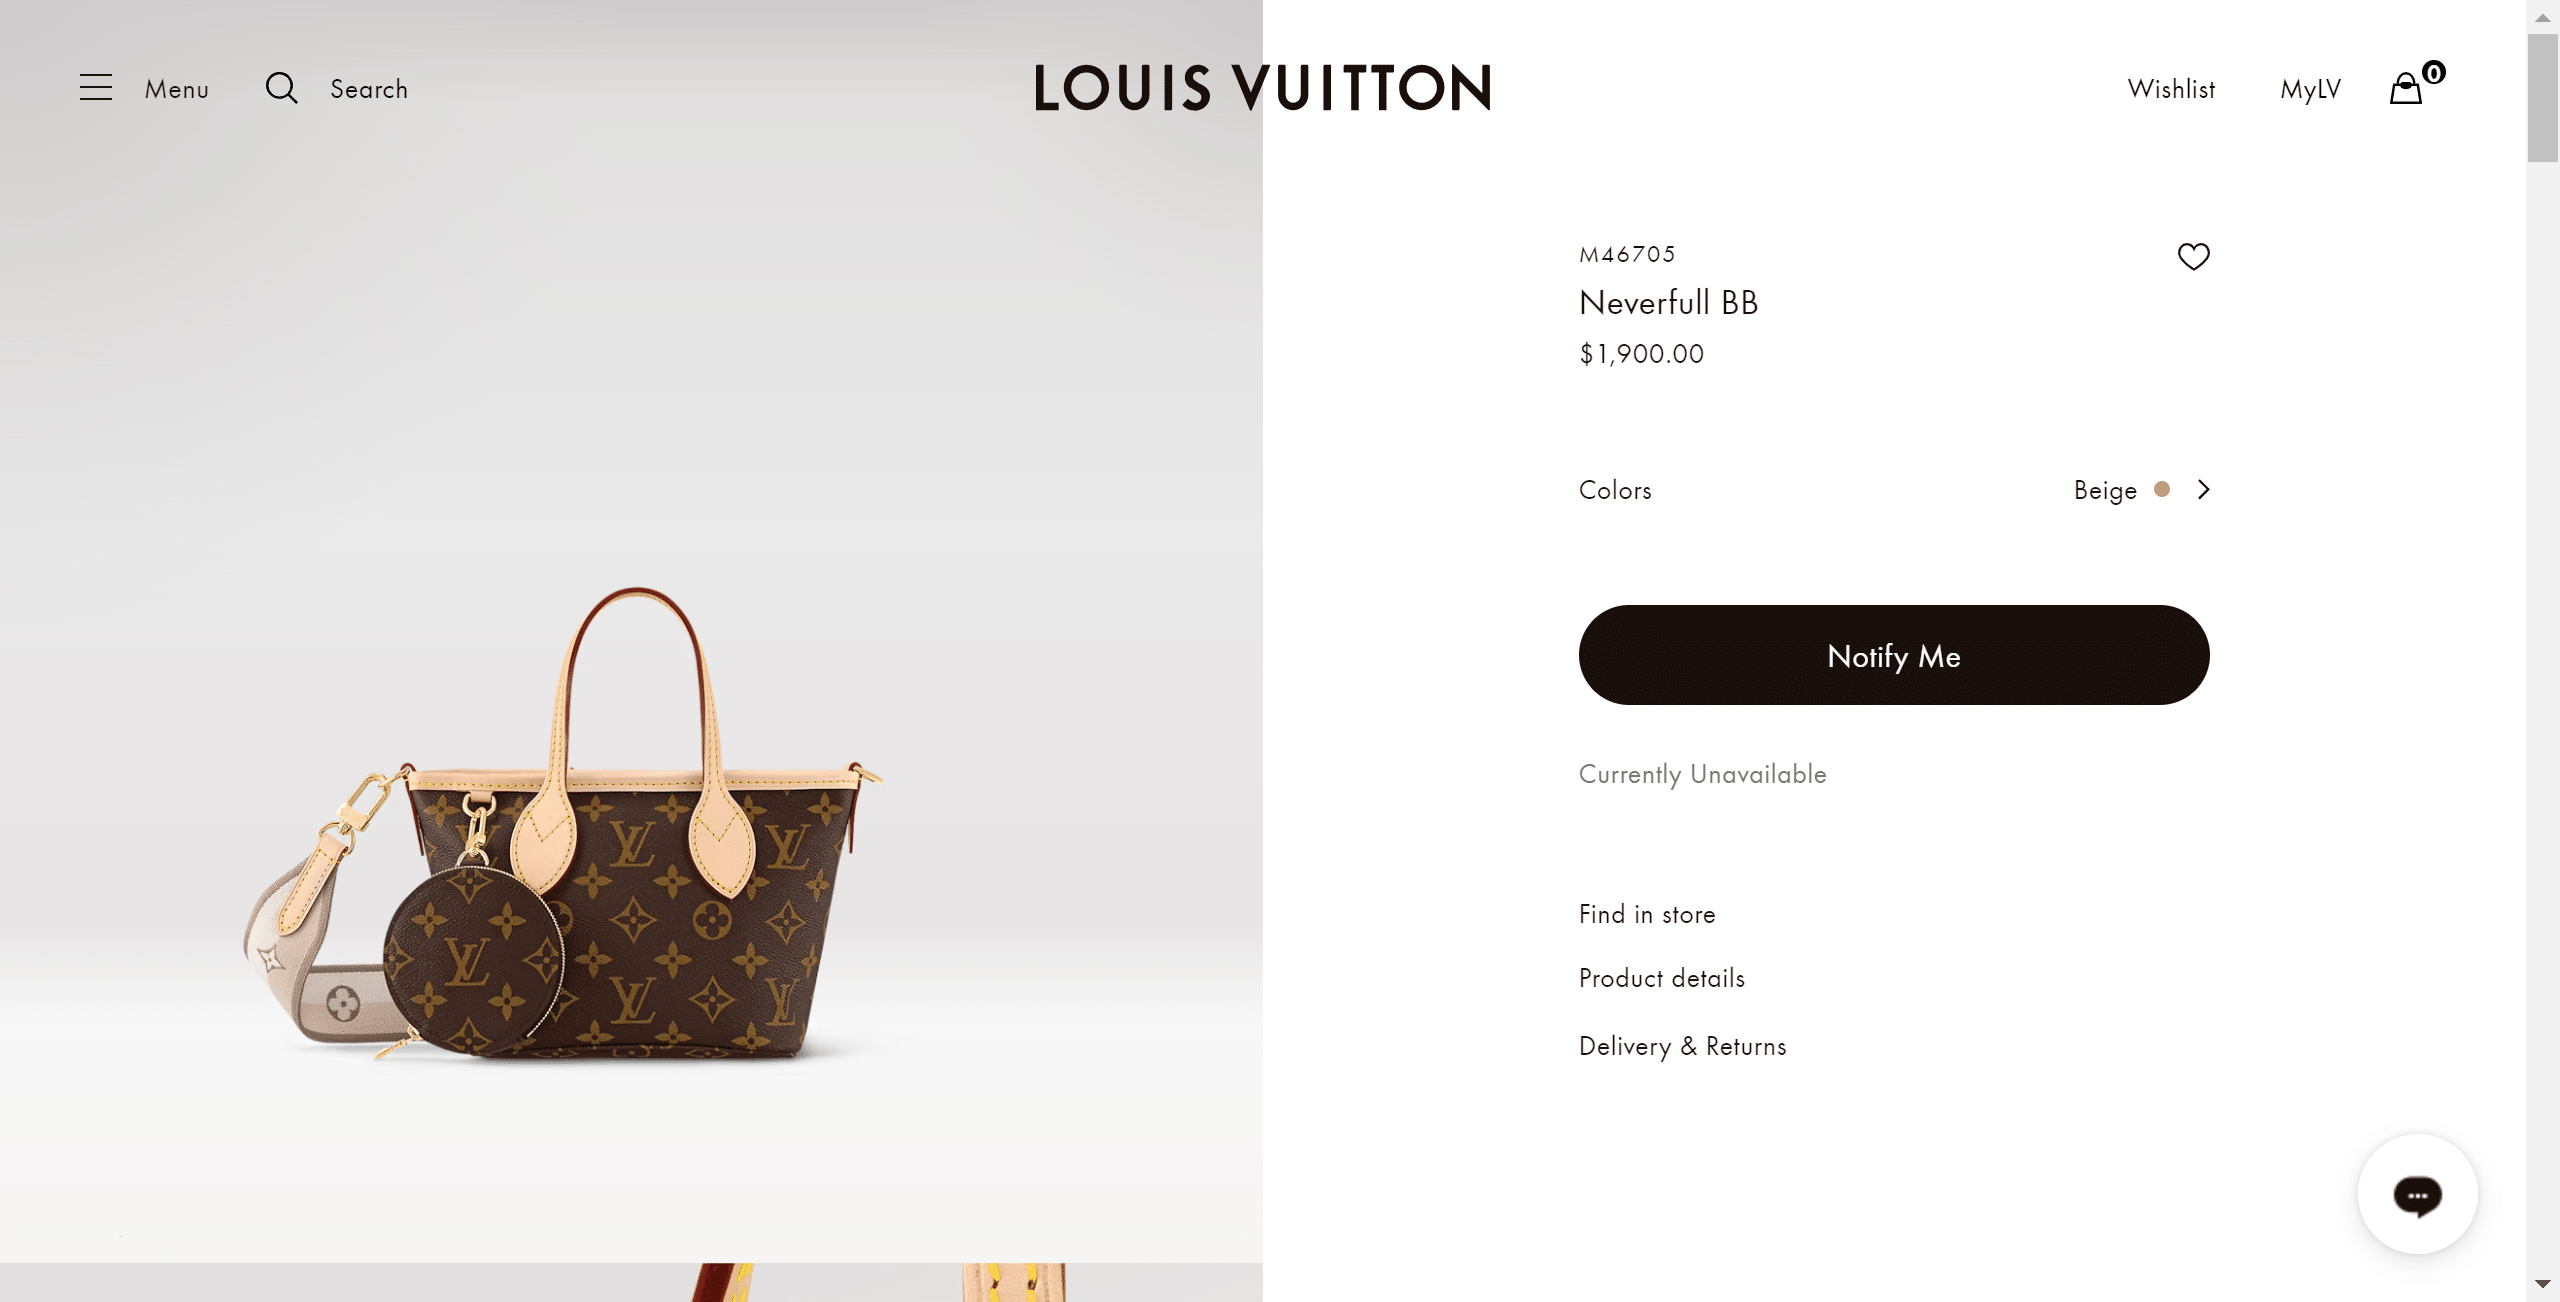 Louis Vuitton Neverfull BB